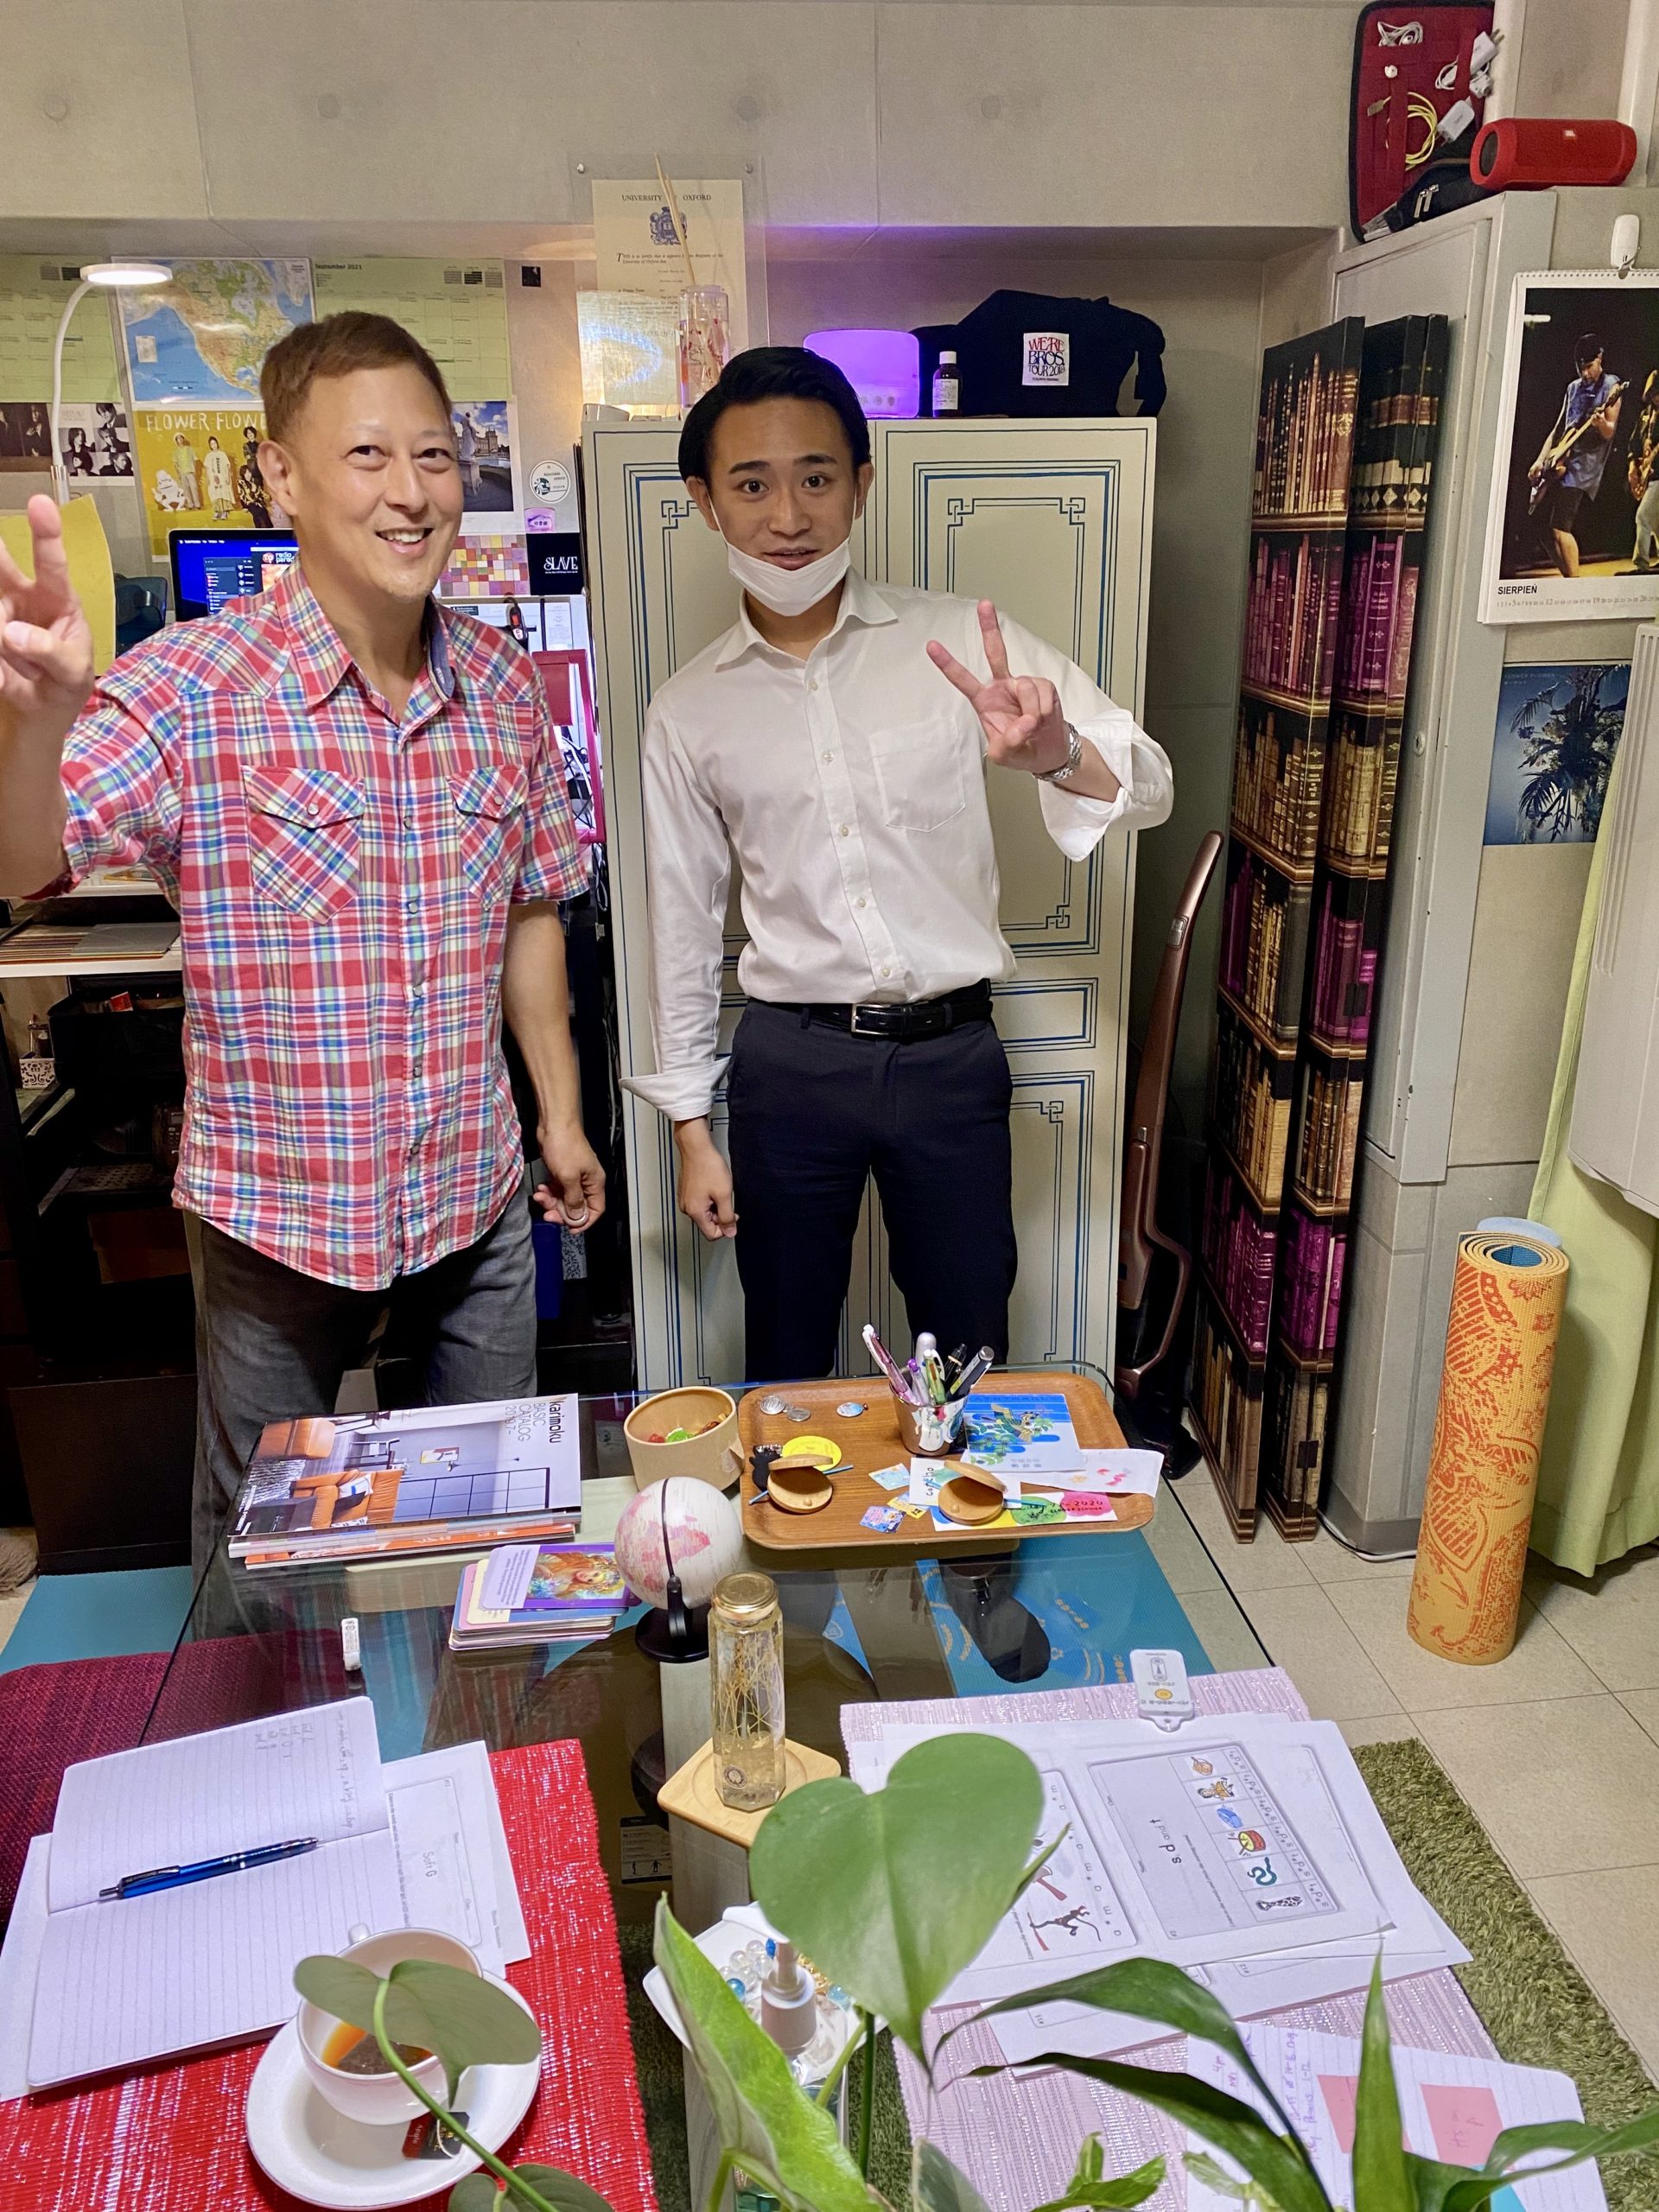 生徒さんは札幌で新しい仕事をする為に英語を学んでいます。